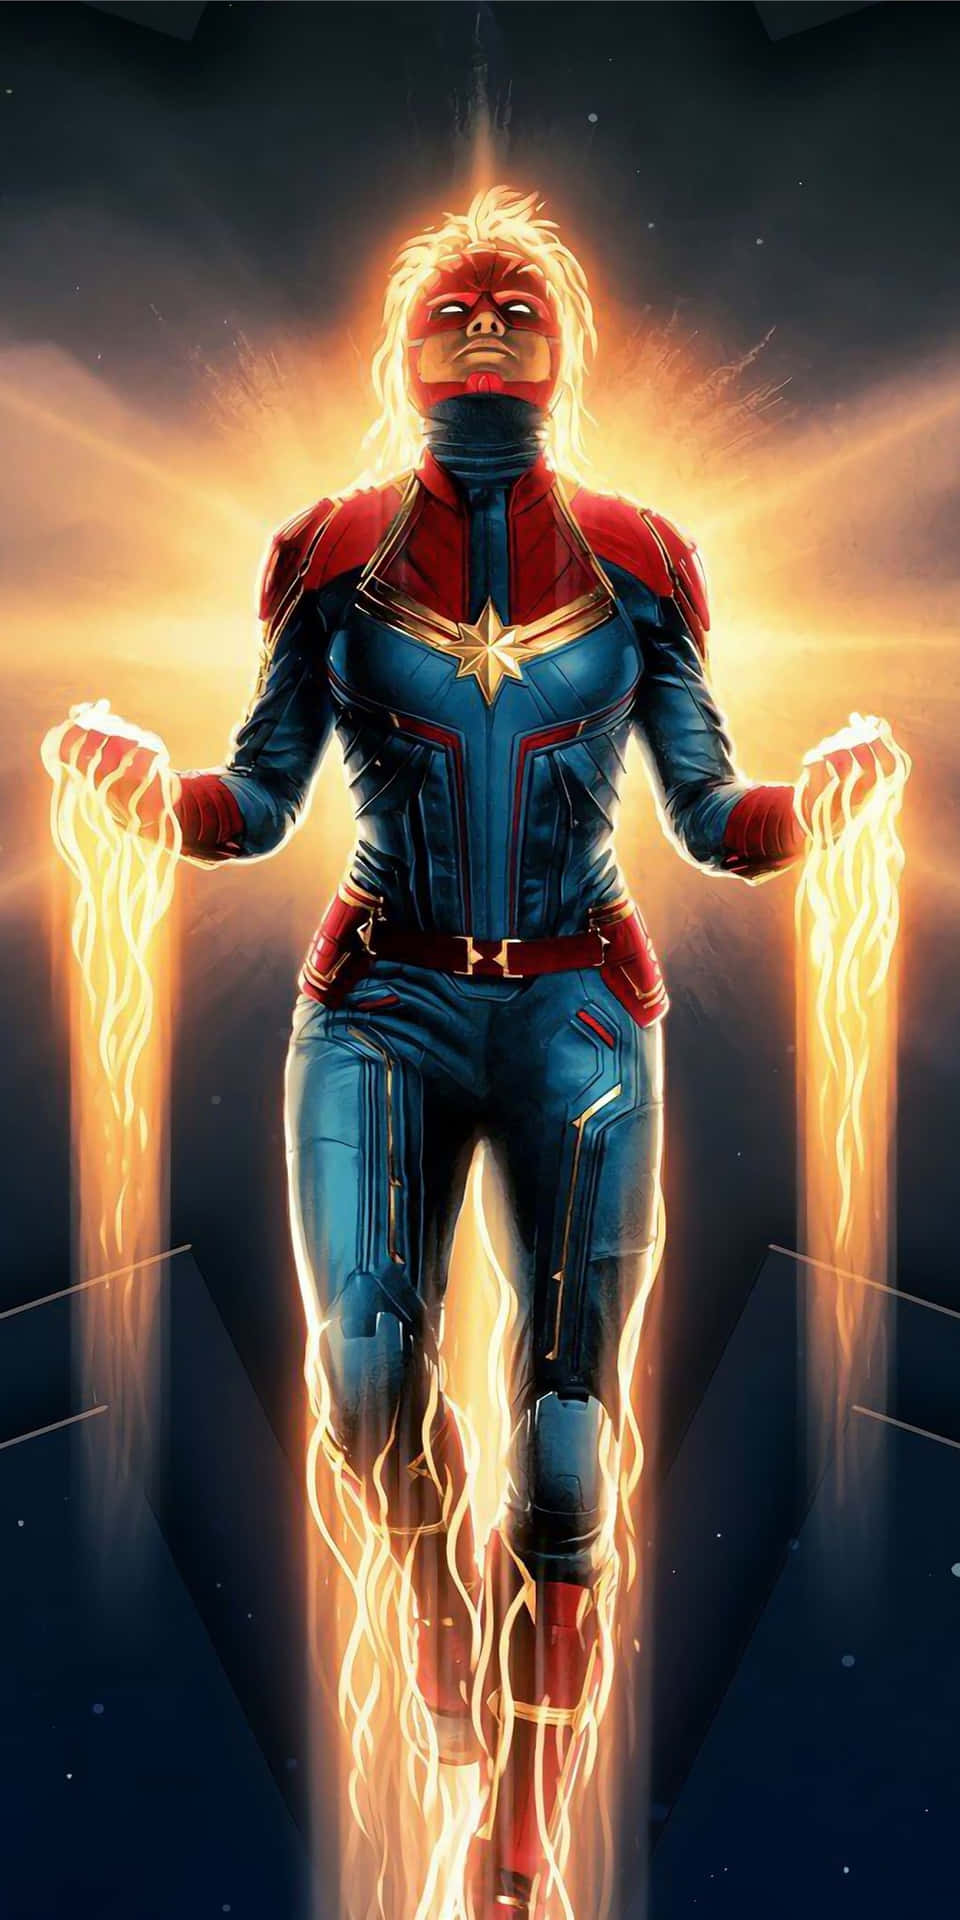 Pixel3 Bakgrundsbild Med Captain Marvel I Fullständig Kostym.